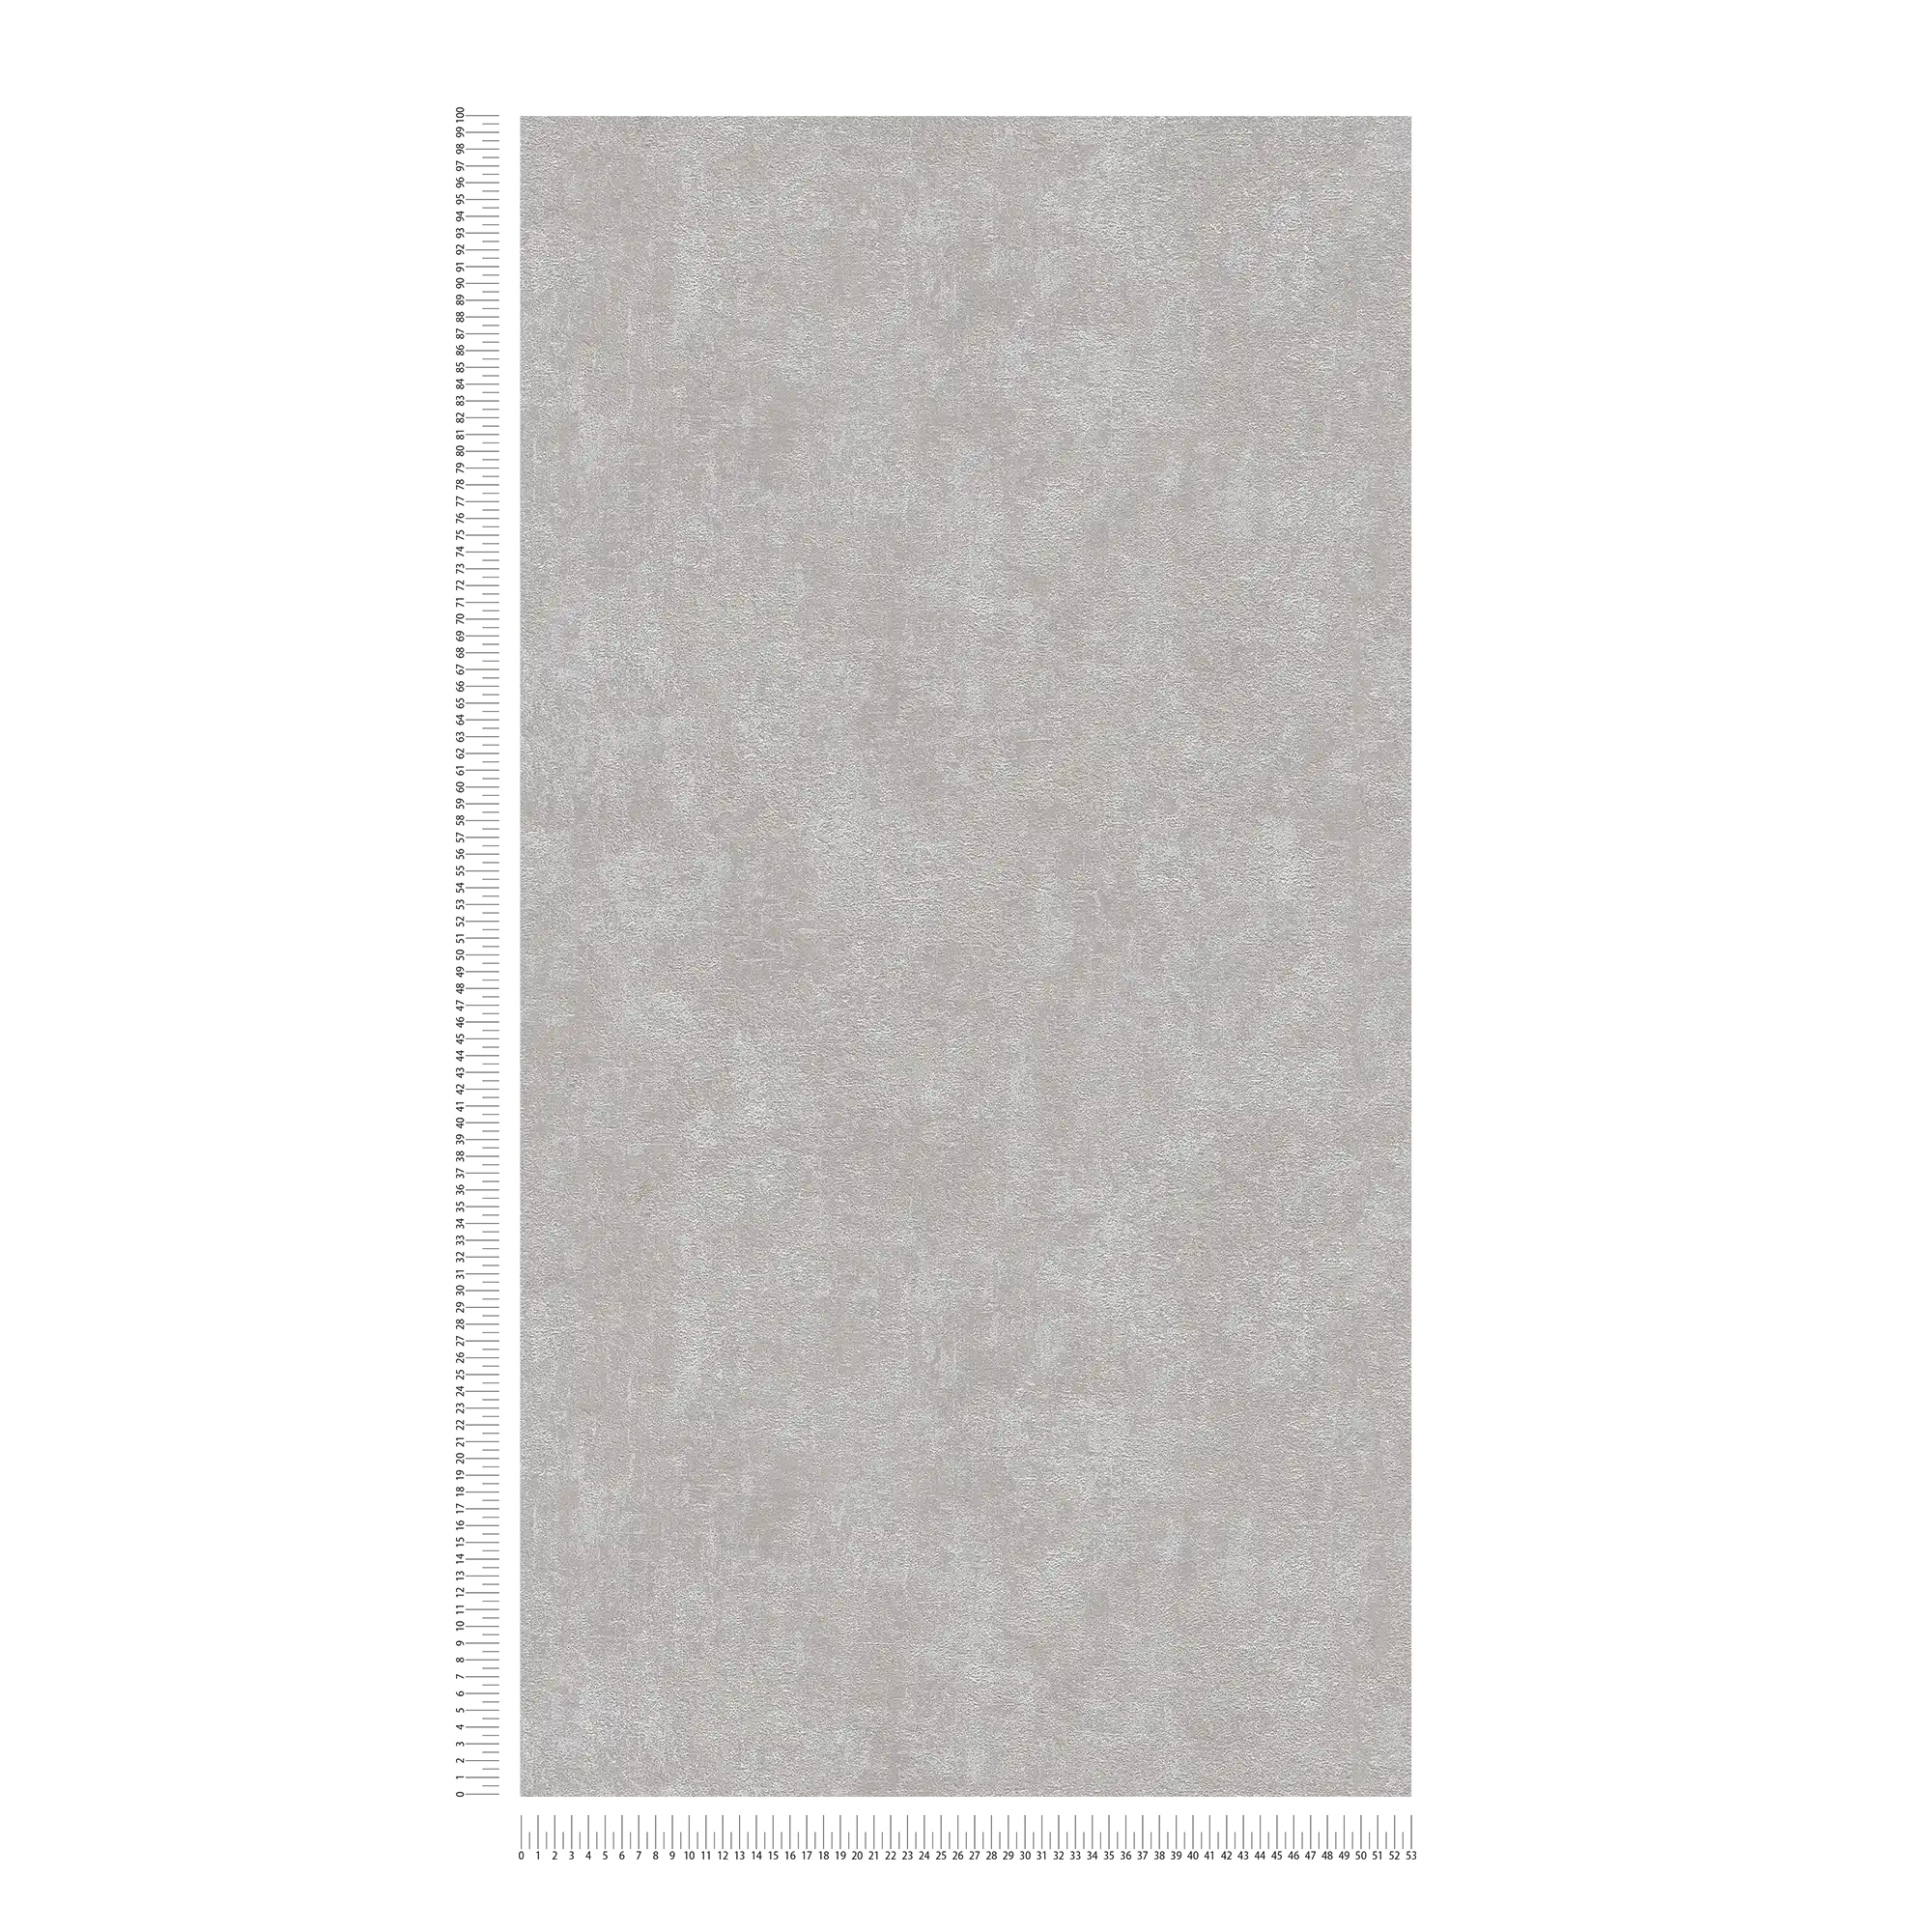             Carta da parati struttura in gesso, liscia e satinata - grigio
        